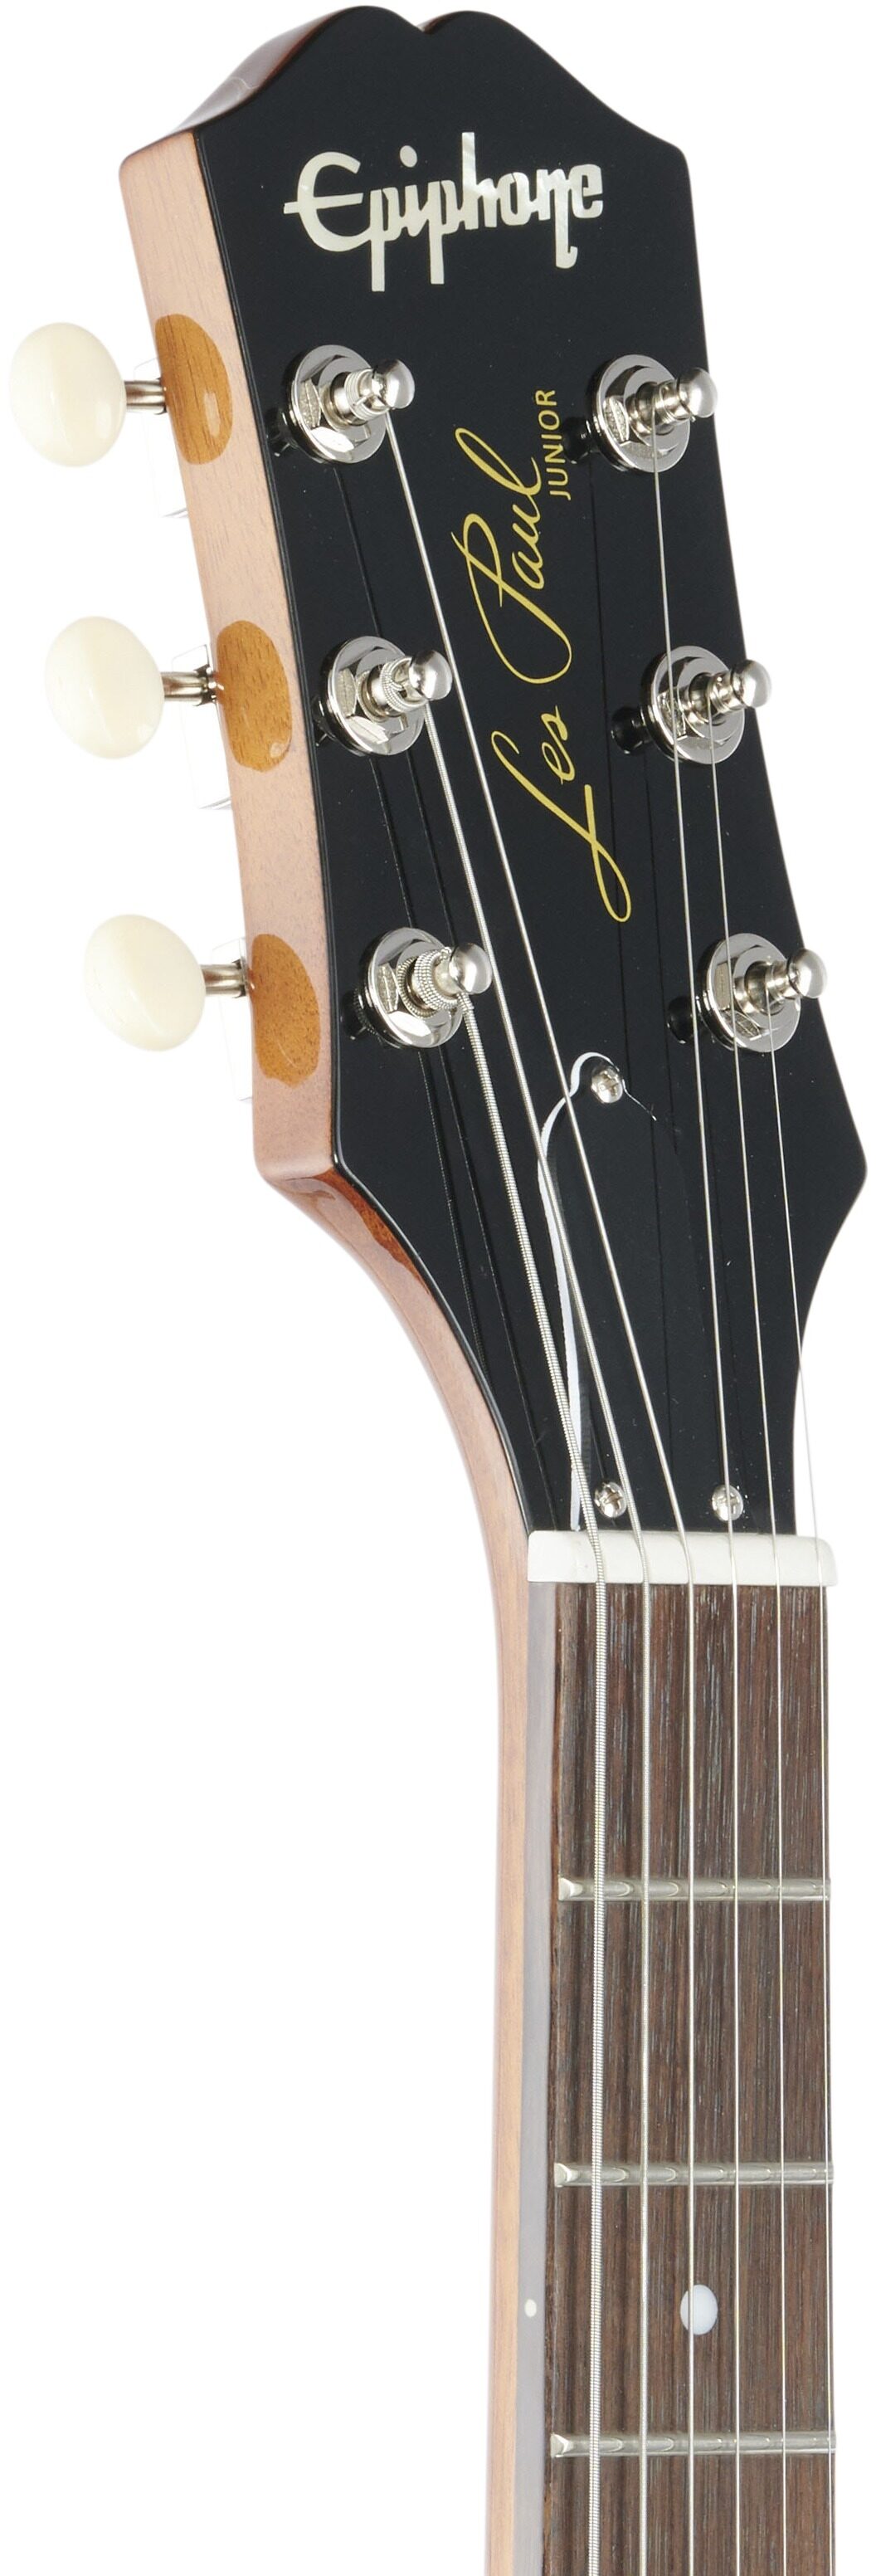 Epiphone Les Paul Junior Electric Guitar